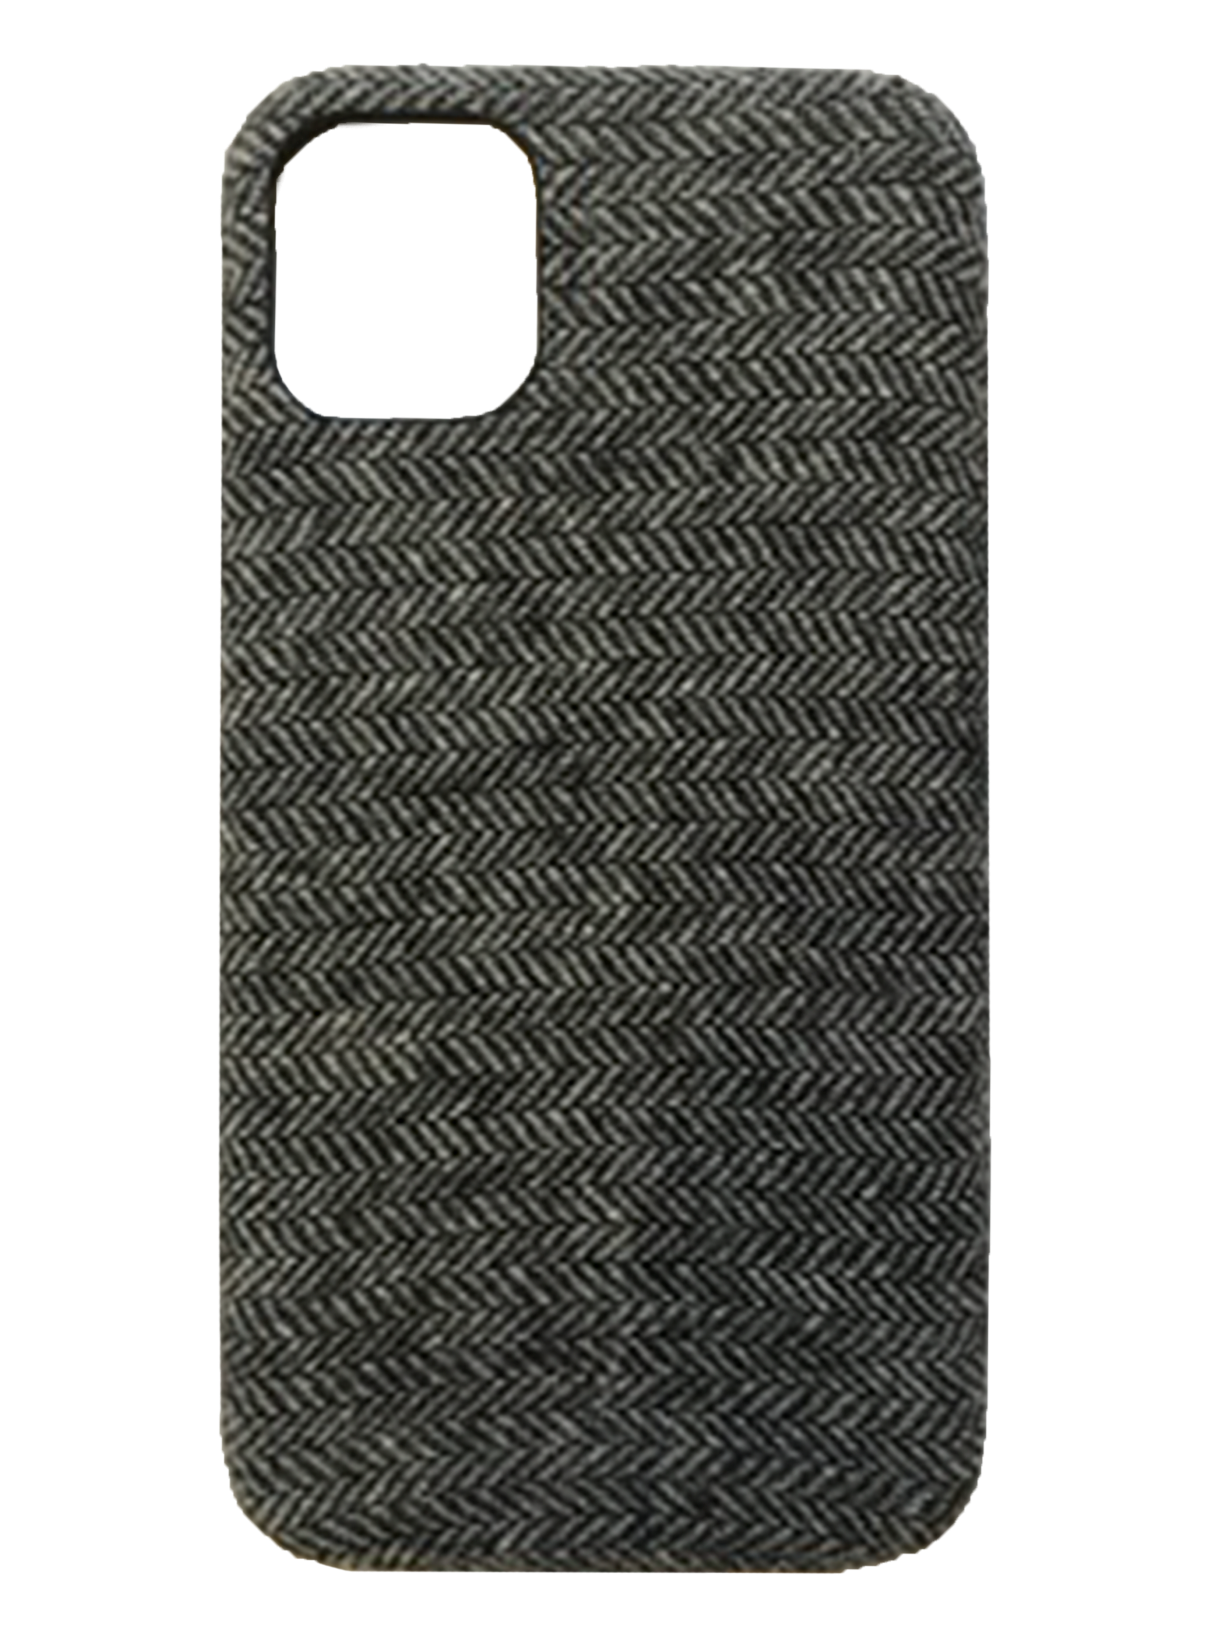 Slate Grey Tweed - iPhone XR / iPhone 11